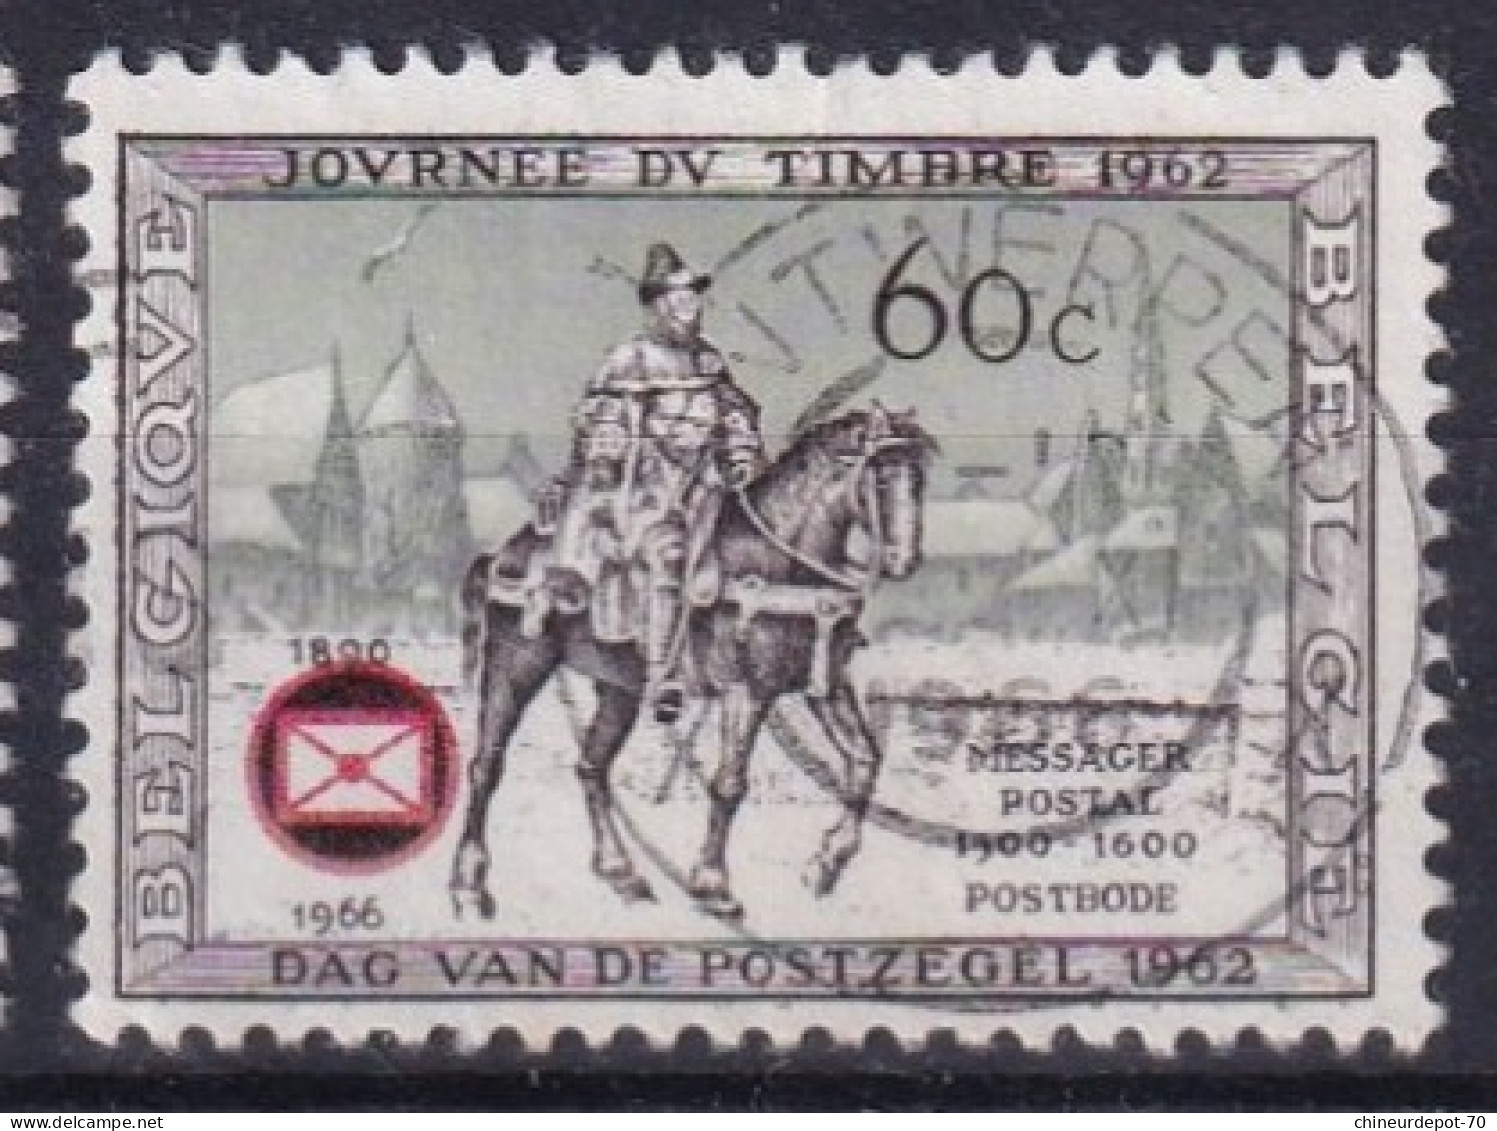 Journée Du Timbre 1962 Bruxelles Soignies Antwerpen Temploux Virton Bastogne Statte Huy Elsenborn - Used Stamps